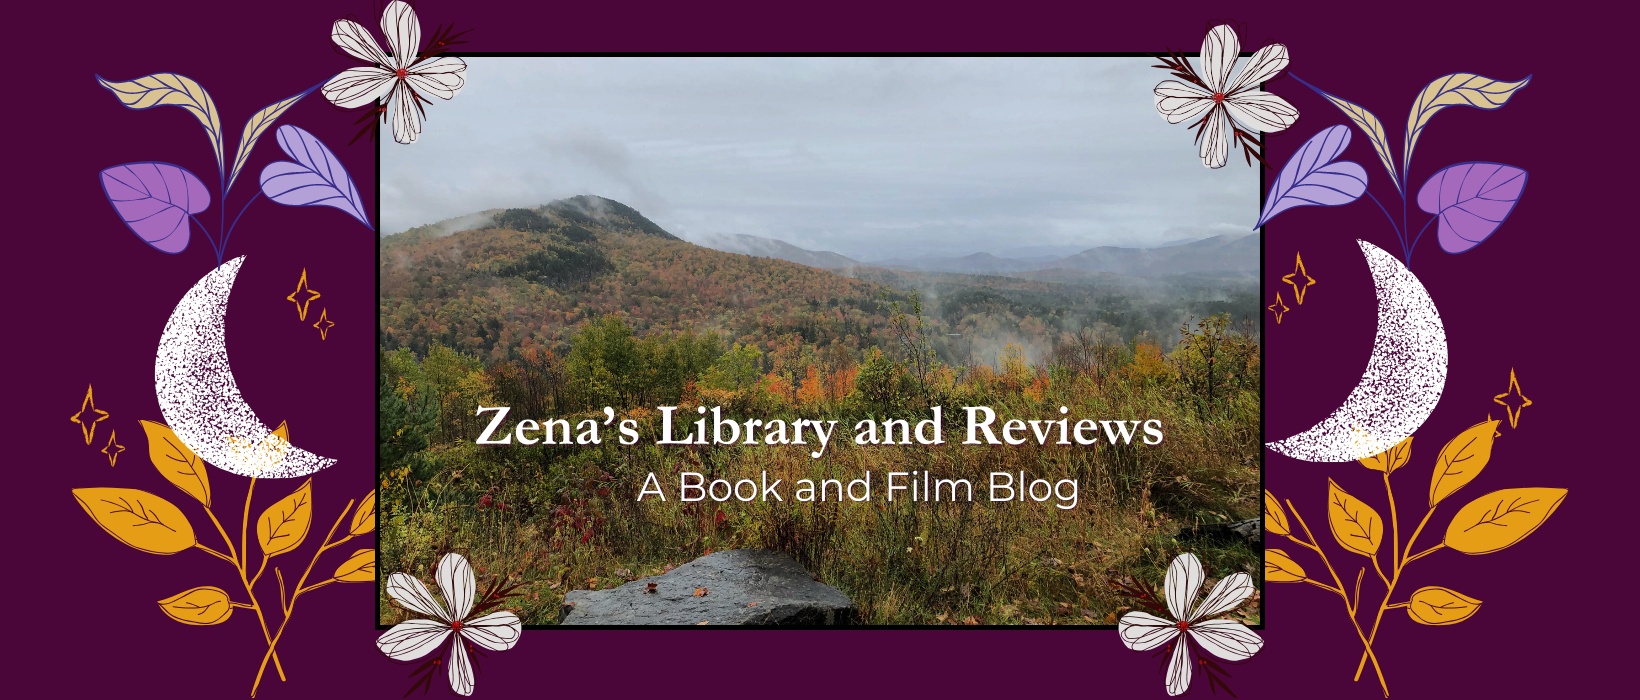 Zena's Library